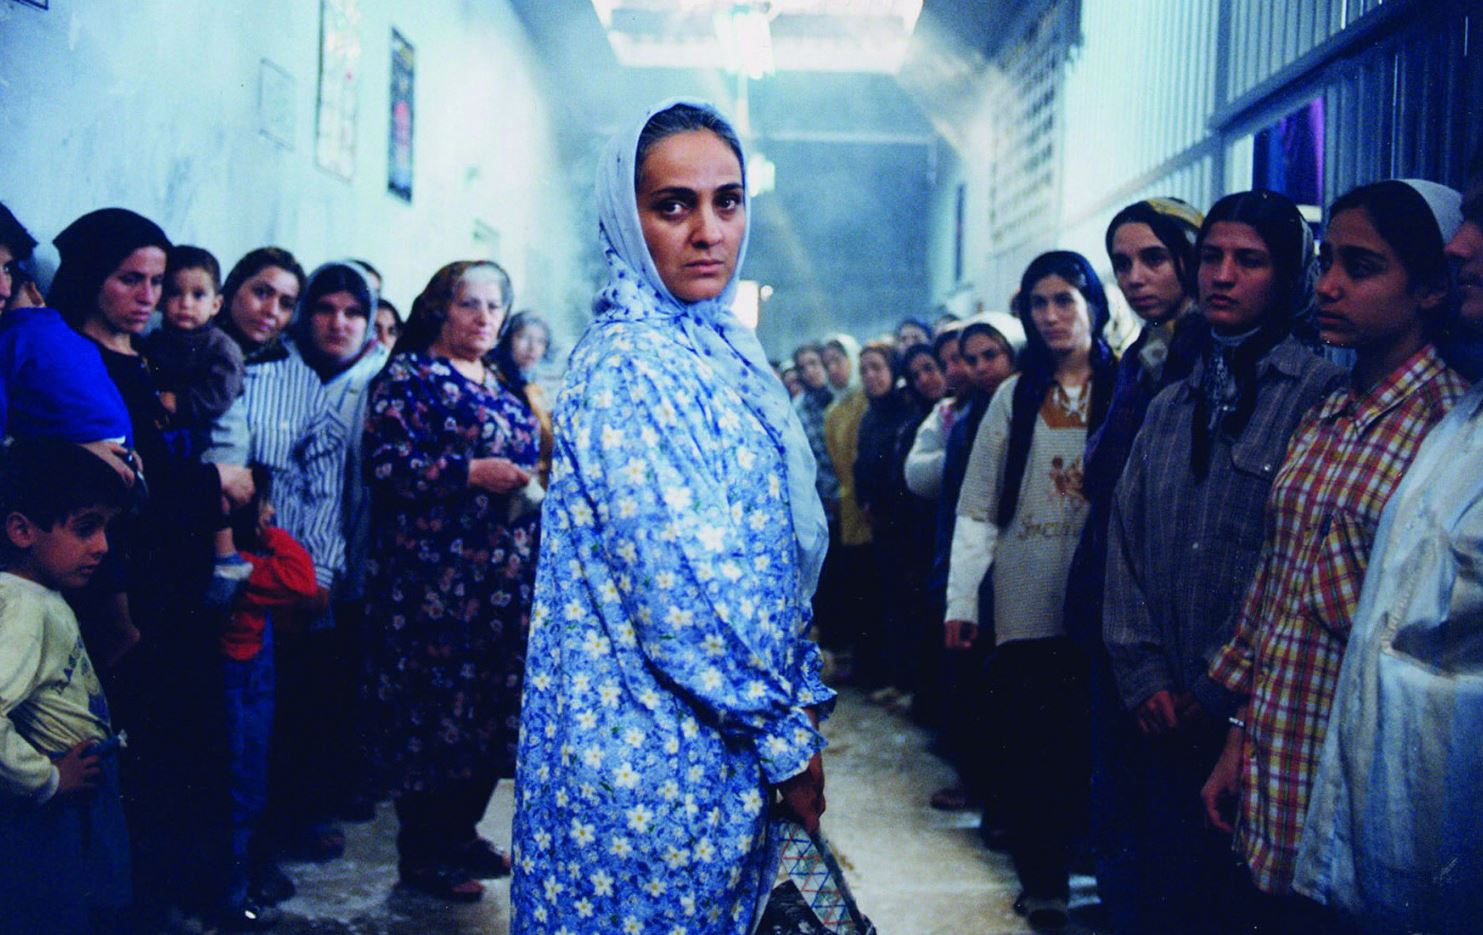 Eine iranische Frau mit Kopftuch steht in der Mitte des Bildes, andere Frauen bilden eine Spalier.